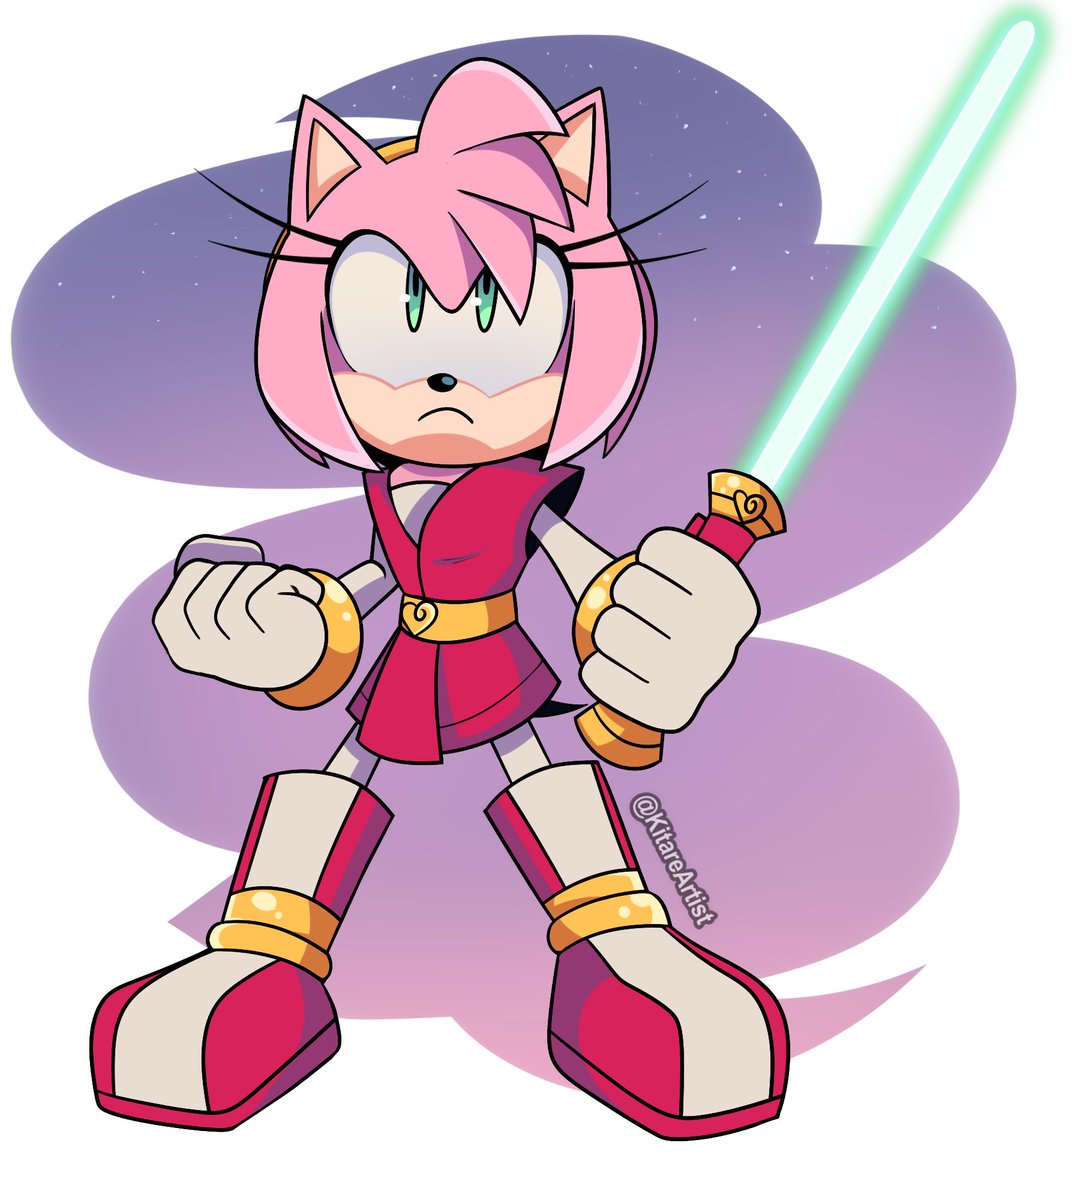 Jedi Master: Amy Rose 💖

#SonicTheHedgehog #SONIC #Sonic30th #sonicau